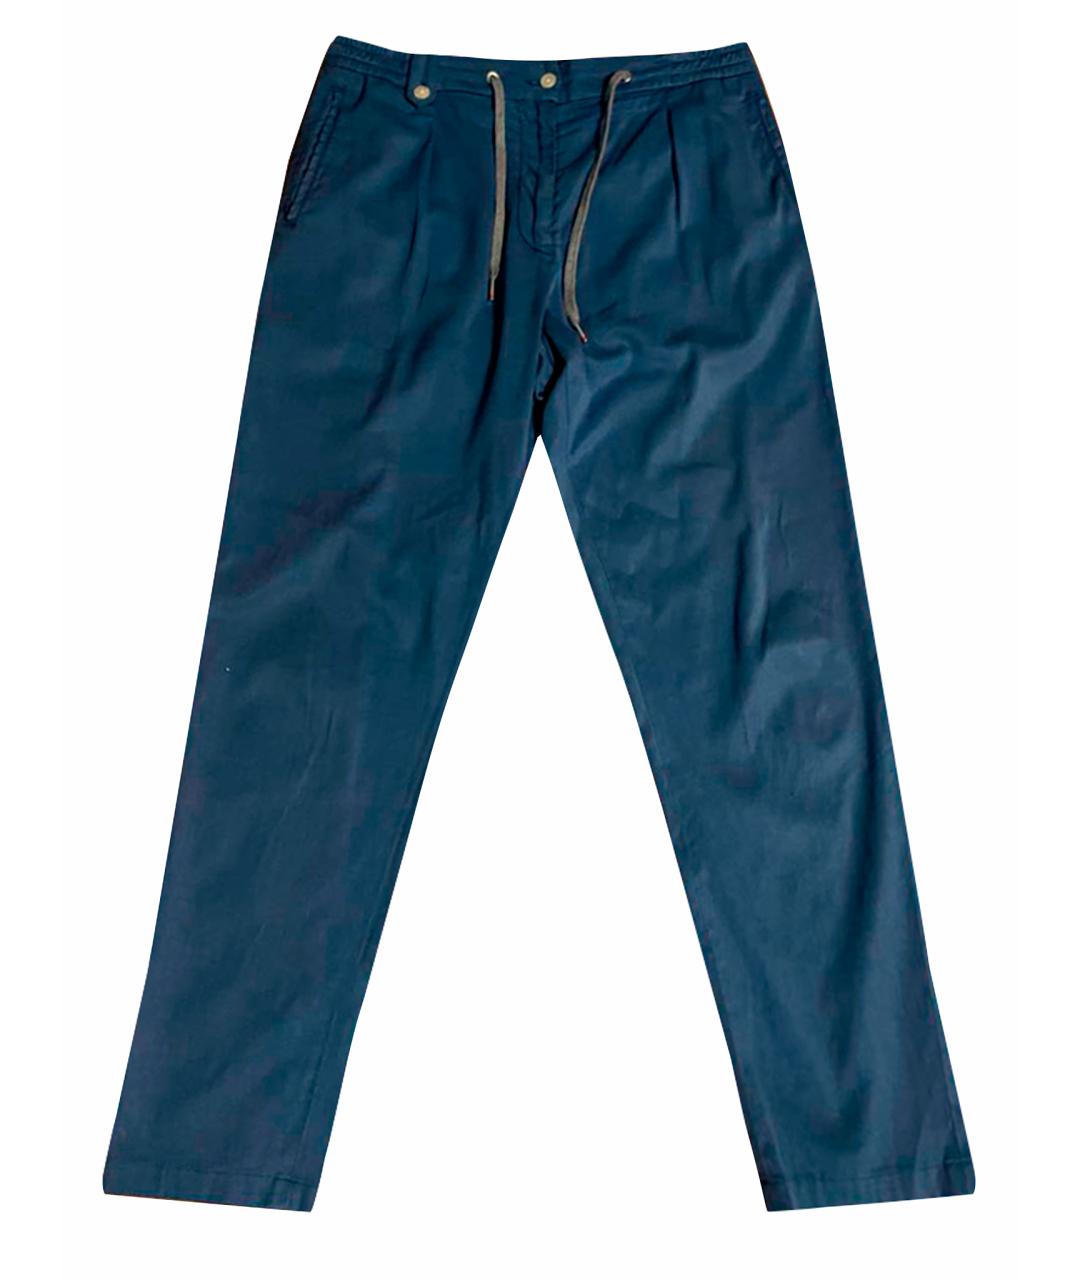 MARCOPESCAROLO Синие шерстяные повседневные брюки, фото 1